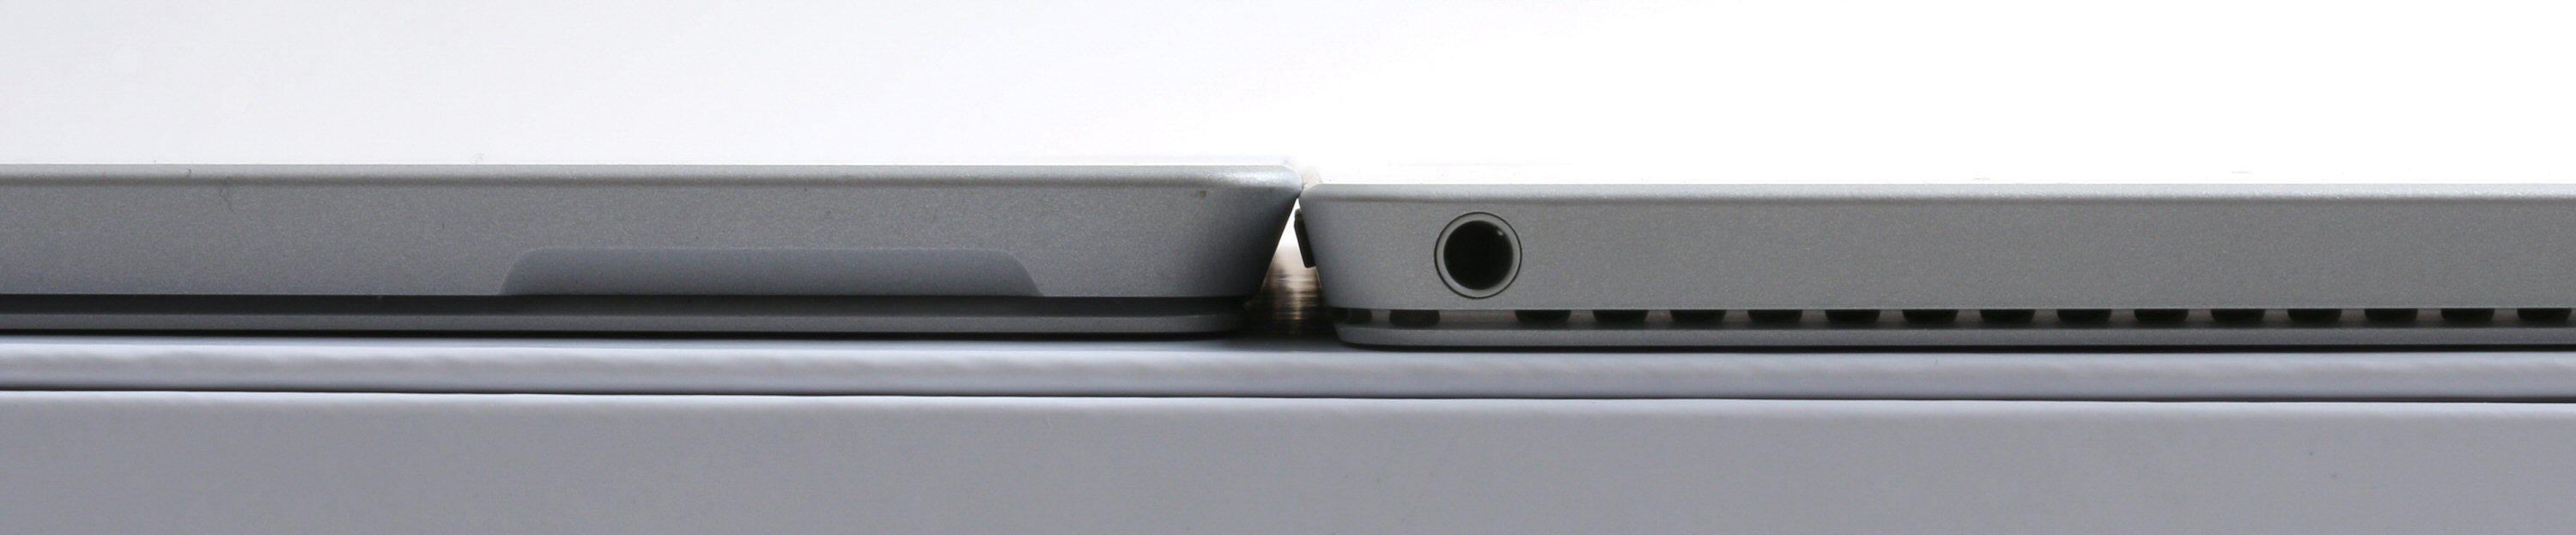 Forskjellen i tykkelse mellom Pro 3 og Pro 4 skal være på 0,76 millimeter. Foto: Vegar Jansen, Tek.no